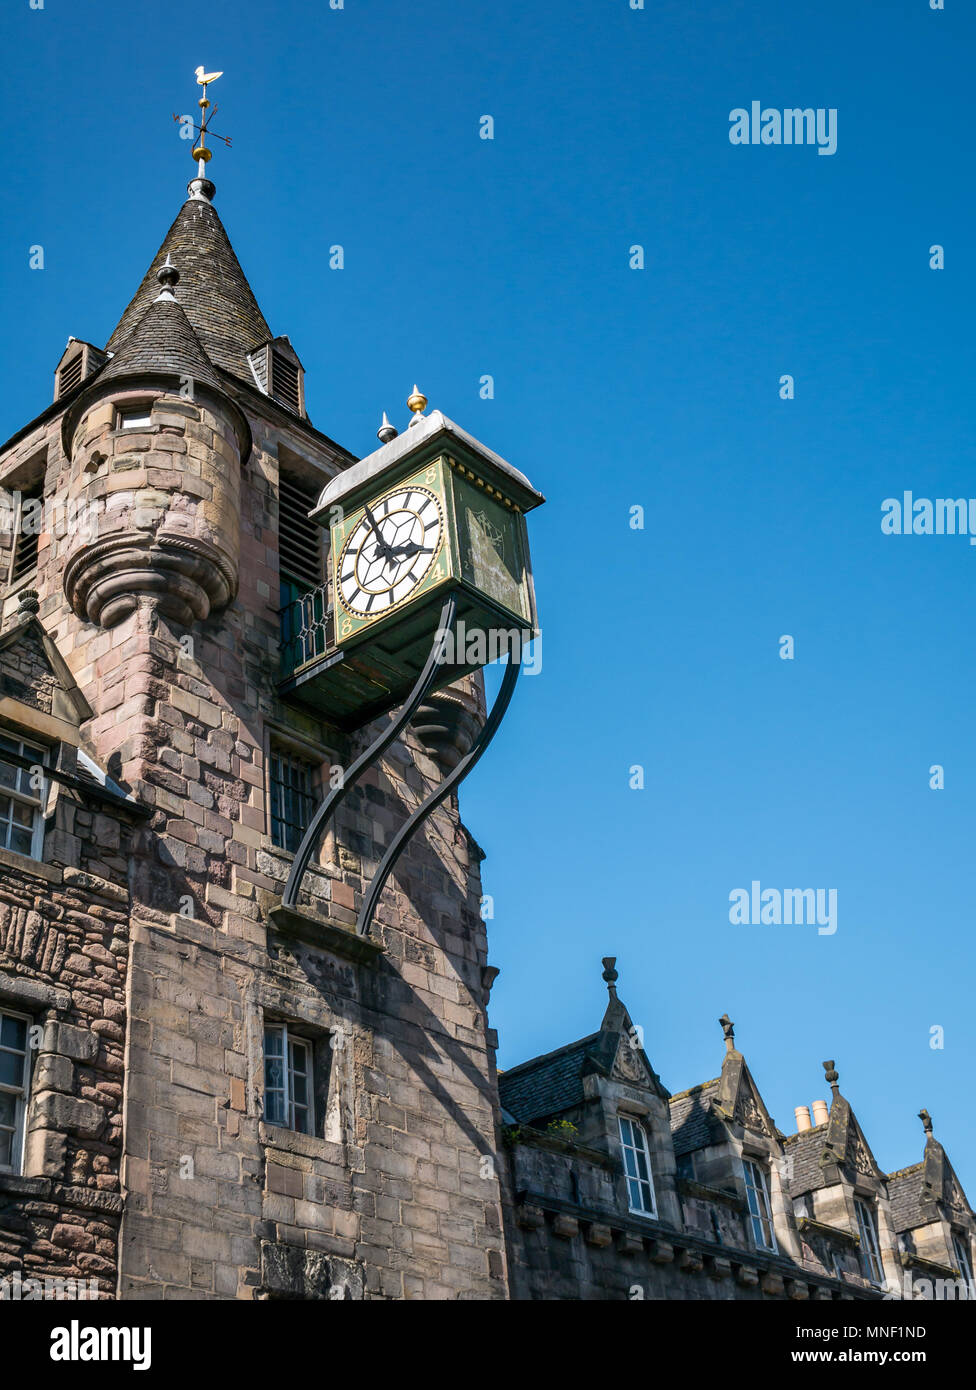 Il vecchio xvi secolo Canongate Tolbooth, Royal Mile di Edimburgo, Scozia, Regno Unito ora la gente della storia Museum, torre campanaria e orologio contro il cielo blu Foto Stock